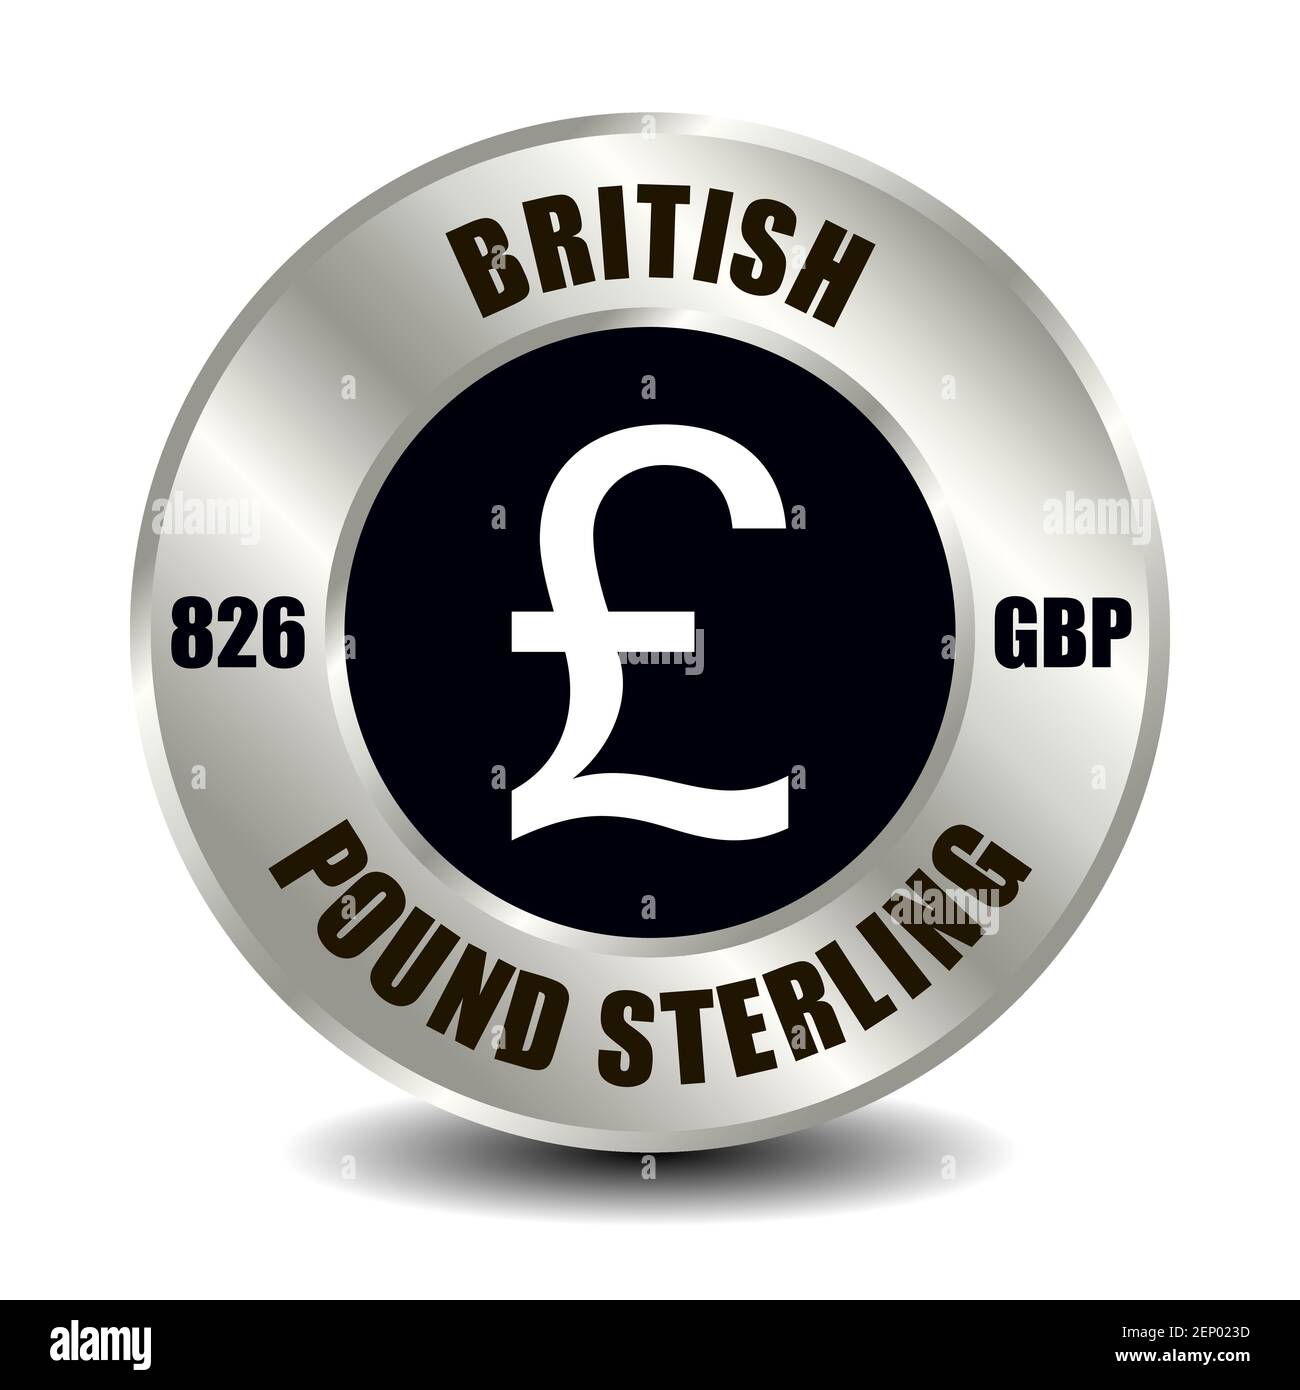 Großbritannien, Vereinigtes Königreich Geldsymbol isoliert auf runder Silbermünze. Vektorzeichen des Währungssymbols mit internationalem ISO-Code und Abkürzung Stock Vektor